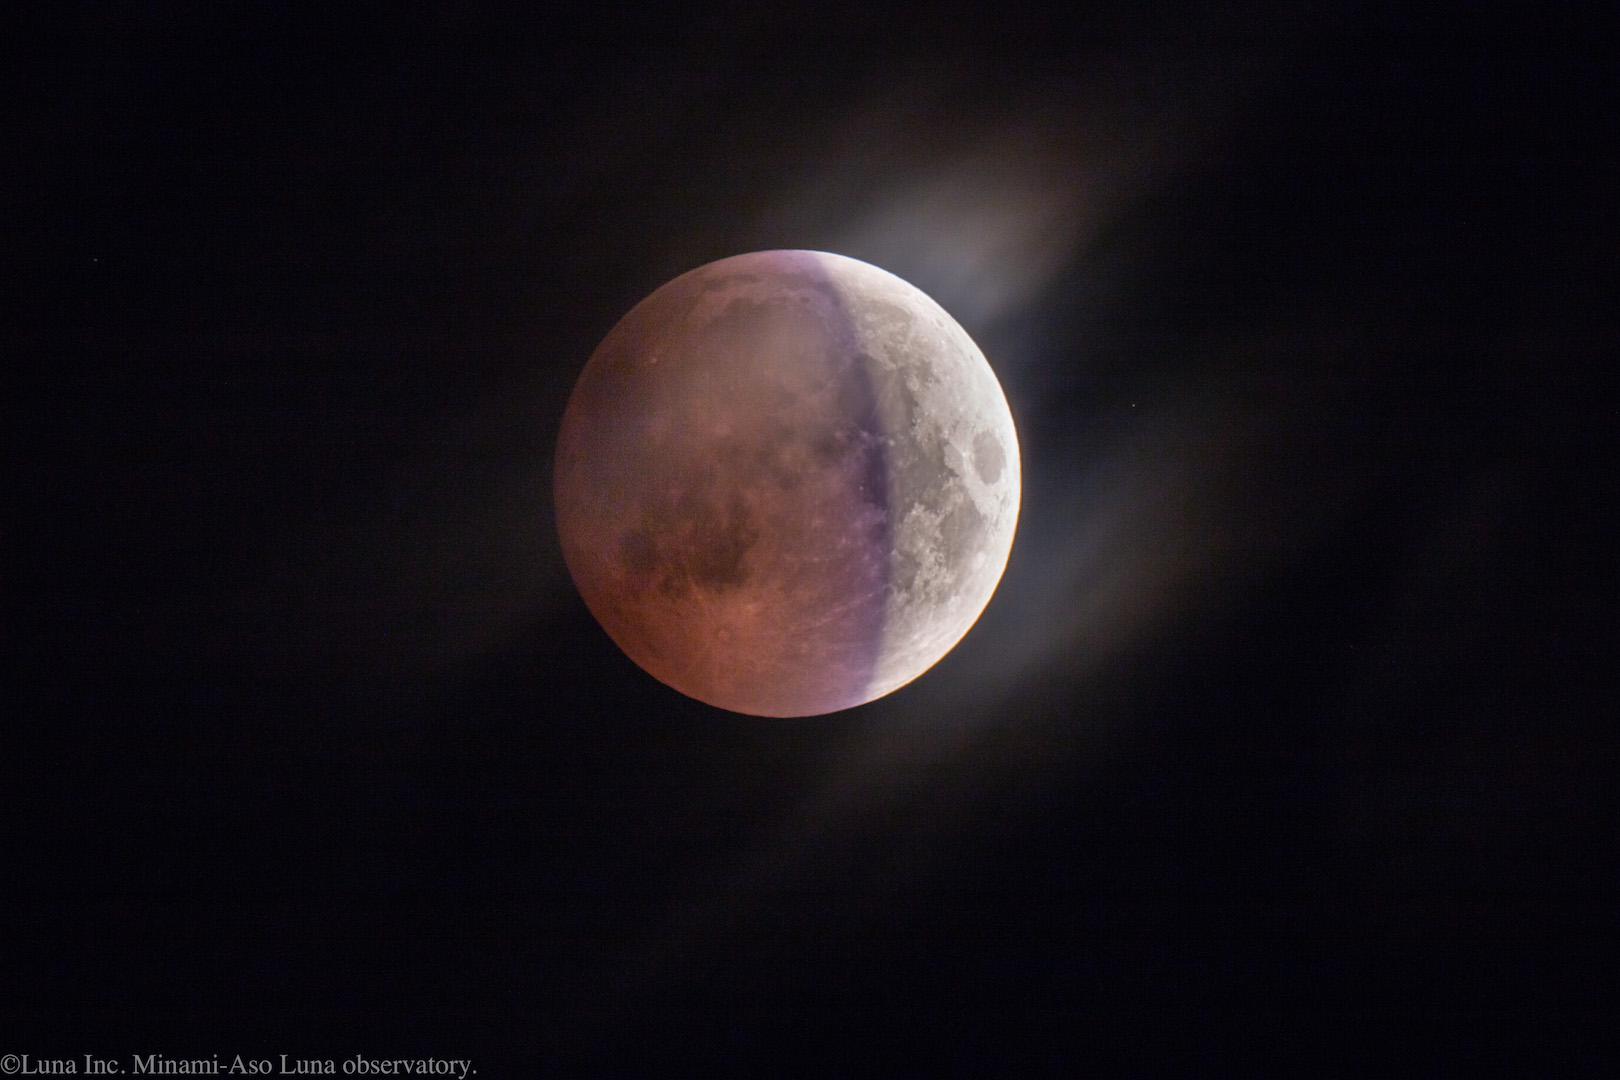 ちょうど中心付近の特徴的な青紫色は、地球のオゾン層の透過光が月面に当たって見えているのです。